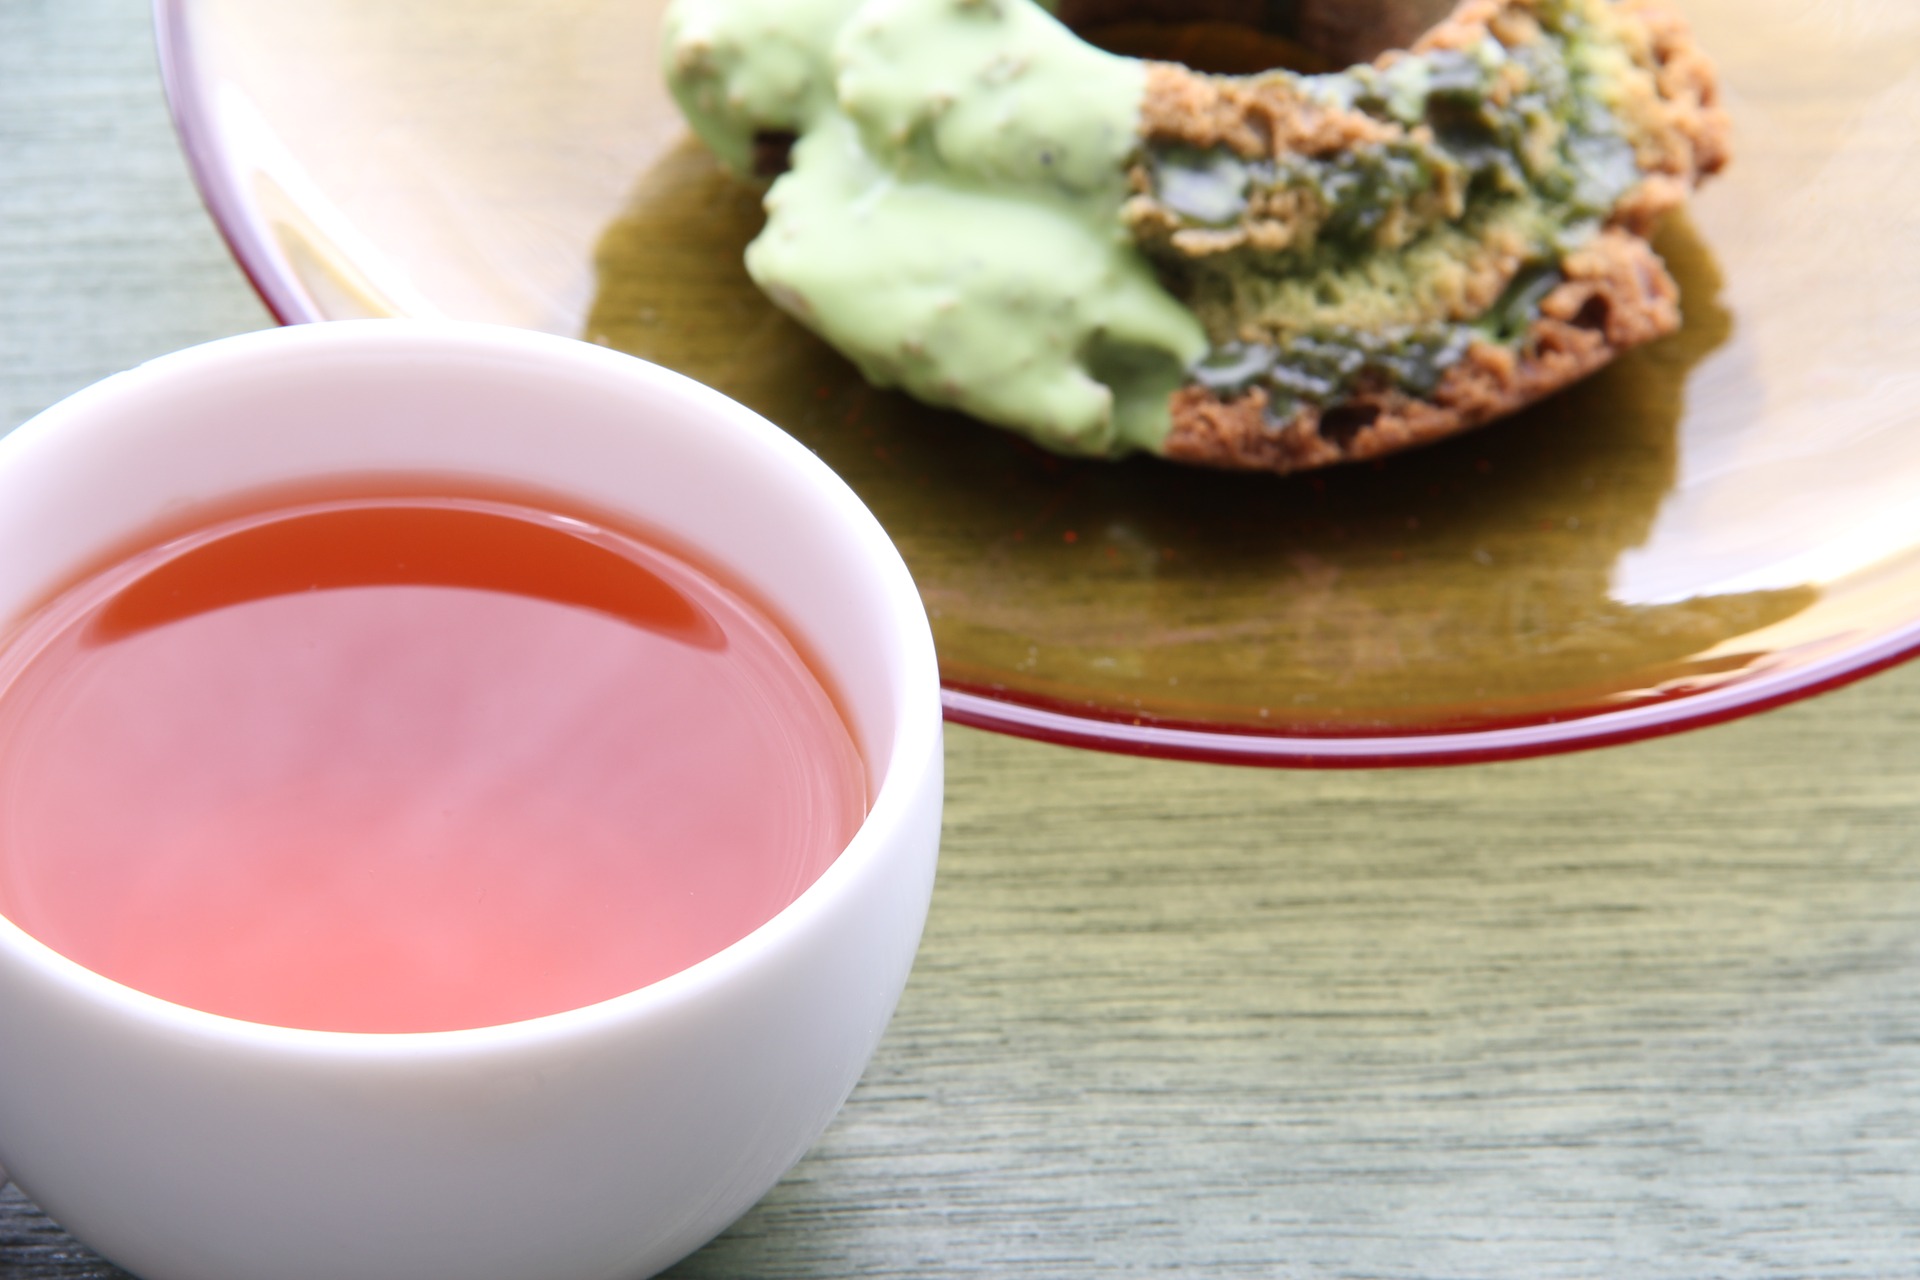 Infusiones de tés y tisanas pueden tener un maridaje dulce o salado. Aquí una infusión acompañada de dona de matcha